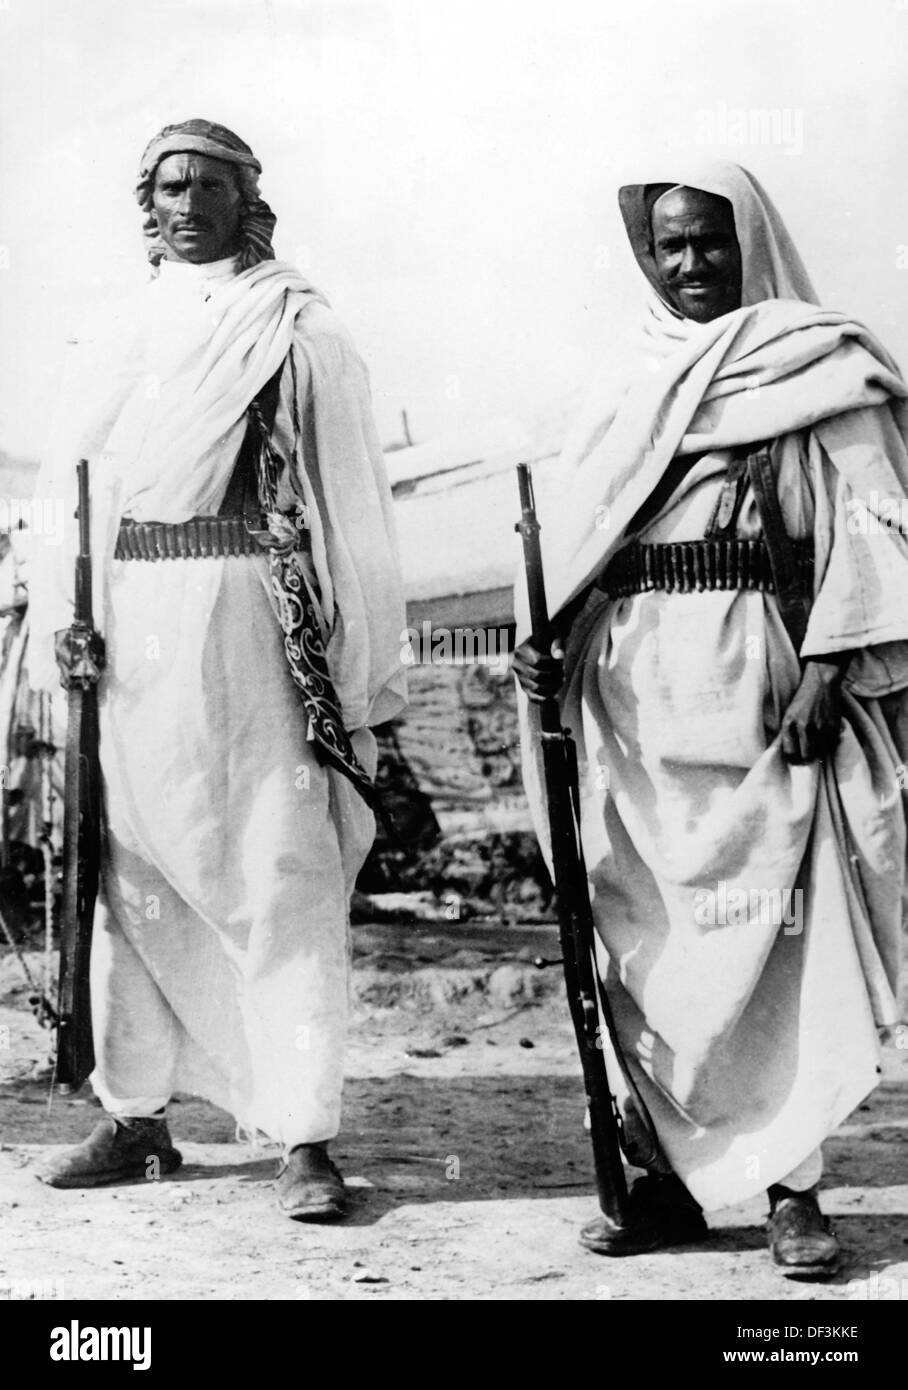 Das Bild der Nazi-Propaganda! Zeigt Beduinen mit den italienischen Truppen in Nordafrika, veröffentlicht am 18. September 1940. Ort unbekannt. Fotoarchiv für Zeitgeschichte Stockfoto